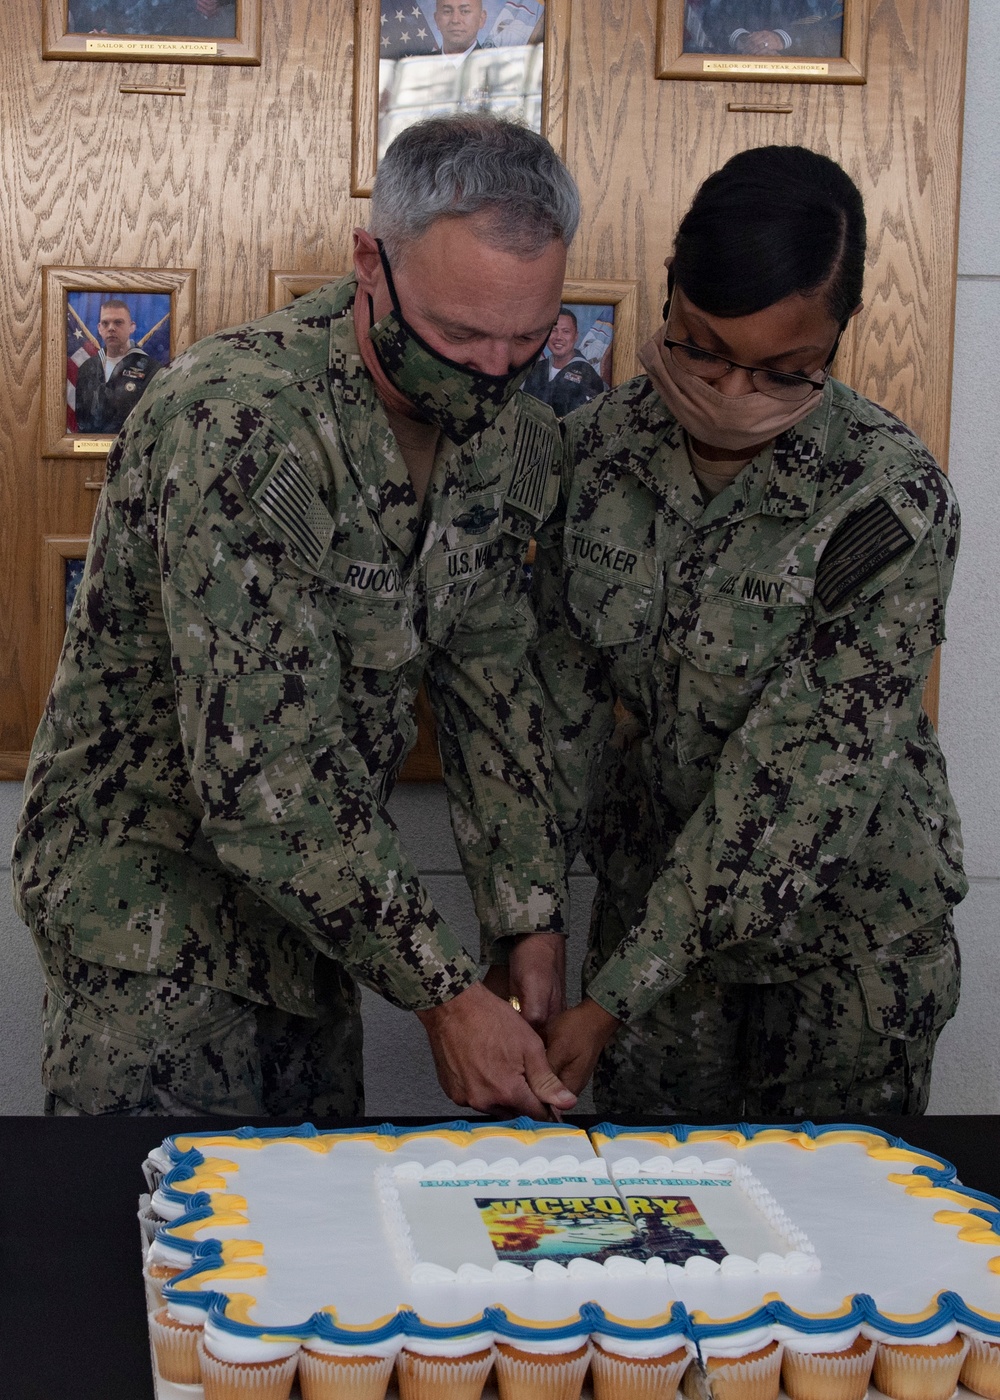 CNSP Celebrates Navy's 245th Birthday